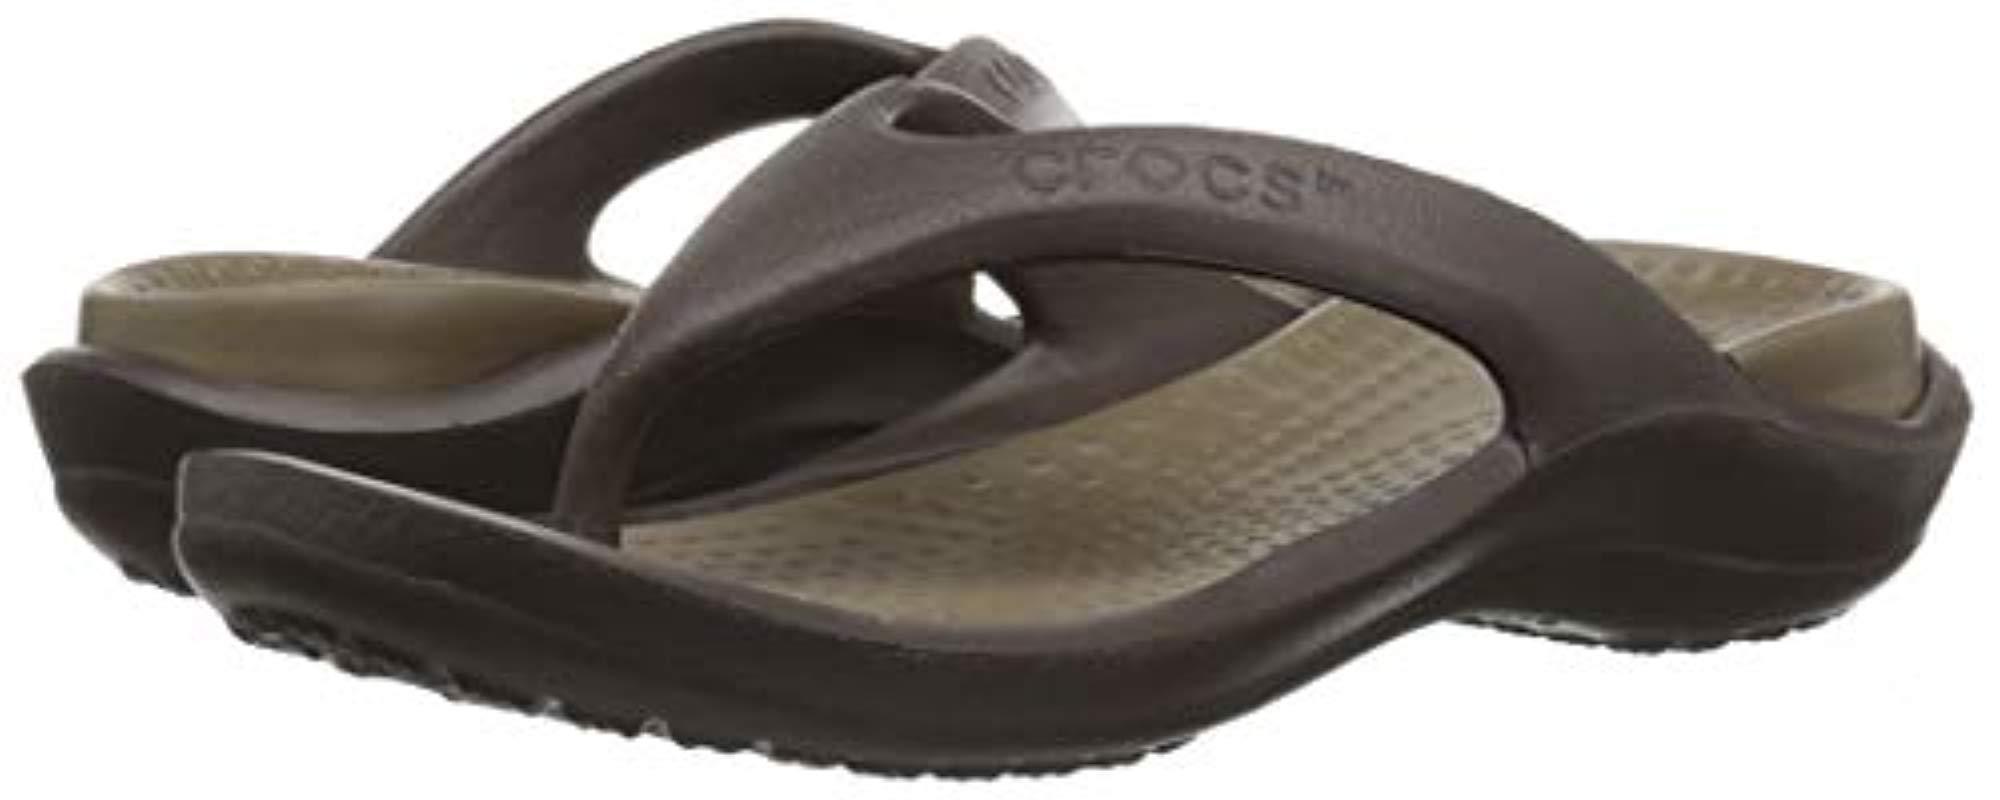 Crocs™ Athens Flip Flop | Lyst